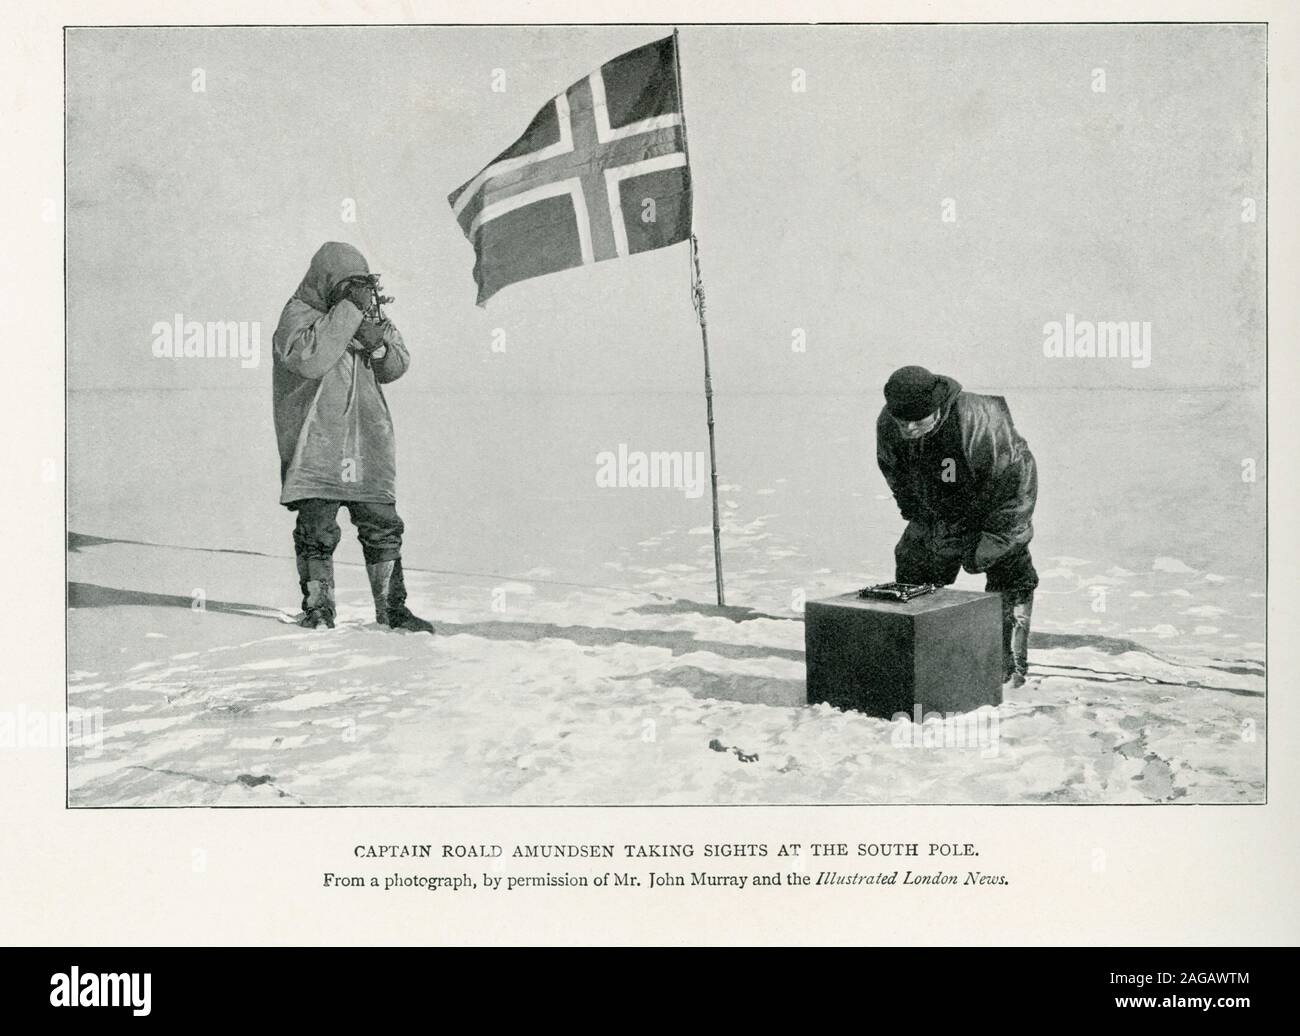 Questa foto mostra il Capitano Roald Amundsen tenendo attrazioni al Polo Sud. La didascalia continua da una fotografia con il permesso del signor John Murray e il Illustrated London News. Amundsen era un esploratore norvegese delle regioni polari e una figura chiave dell'età eroica delle esplorazioni Antartiche. Egli ha condotto la prima spedizione per attraversare il passaggio a nord-ovest dal mare, dal 1903 al 1906, e la prima spedizione al Polo Sud nel 1911. Foto Stock